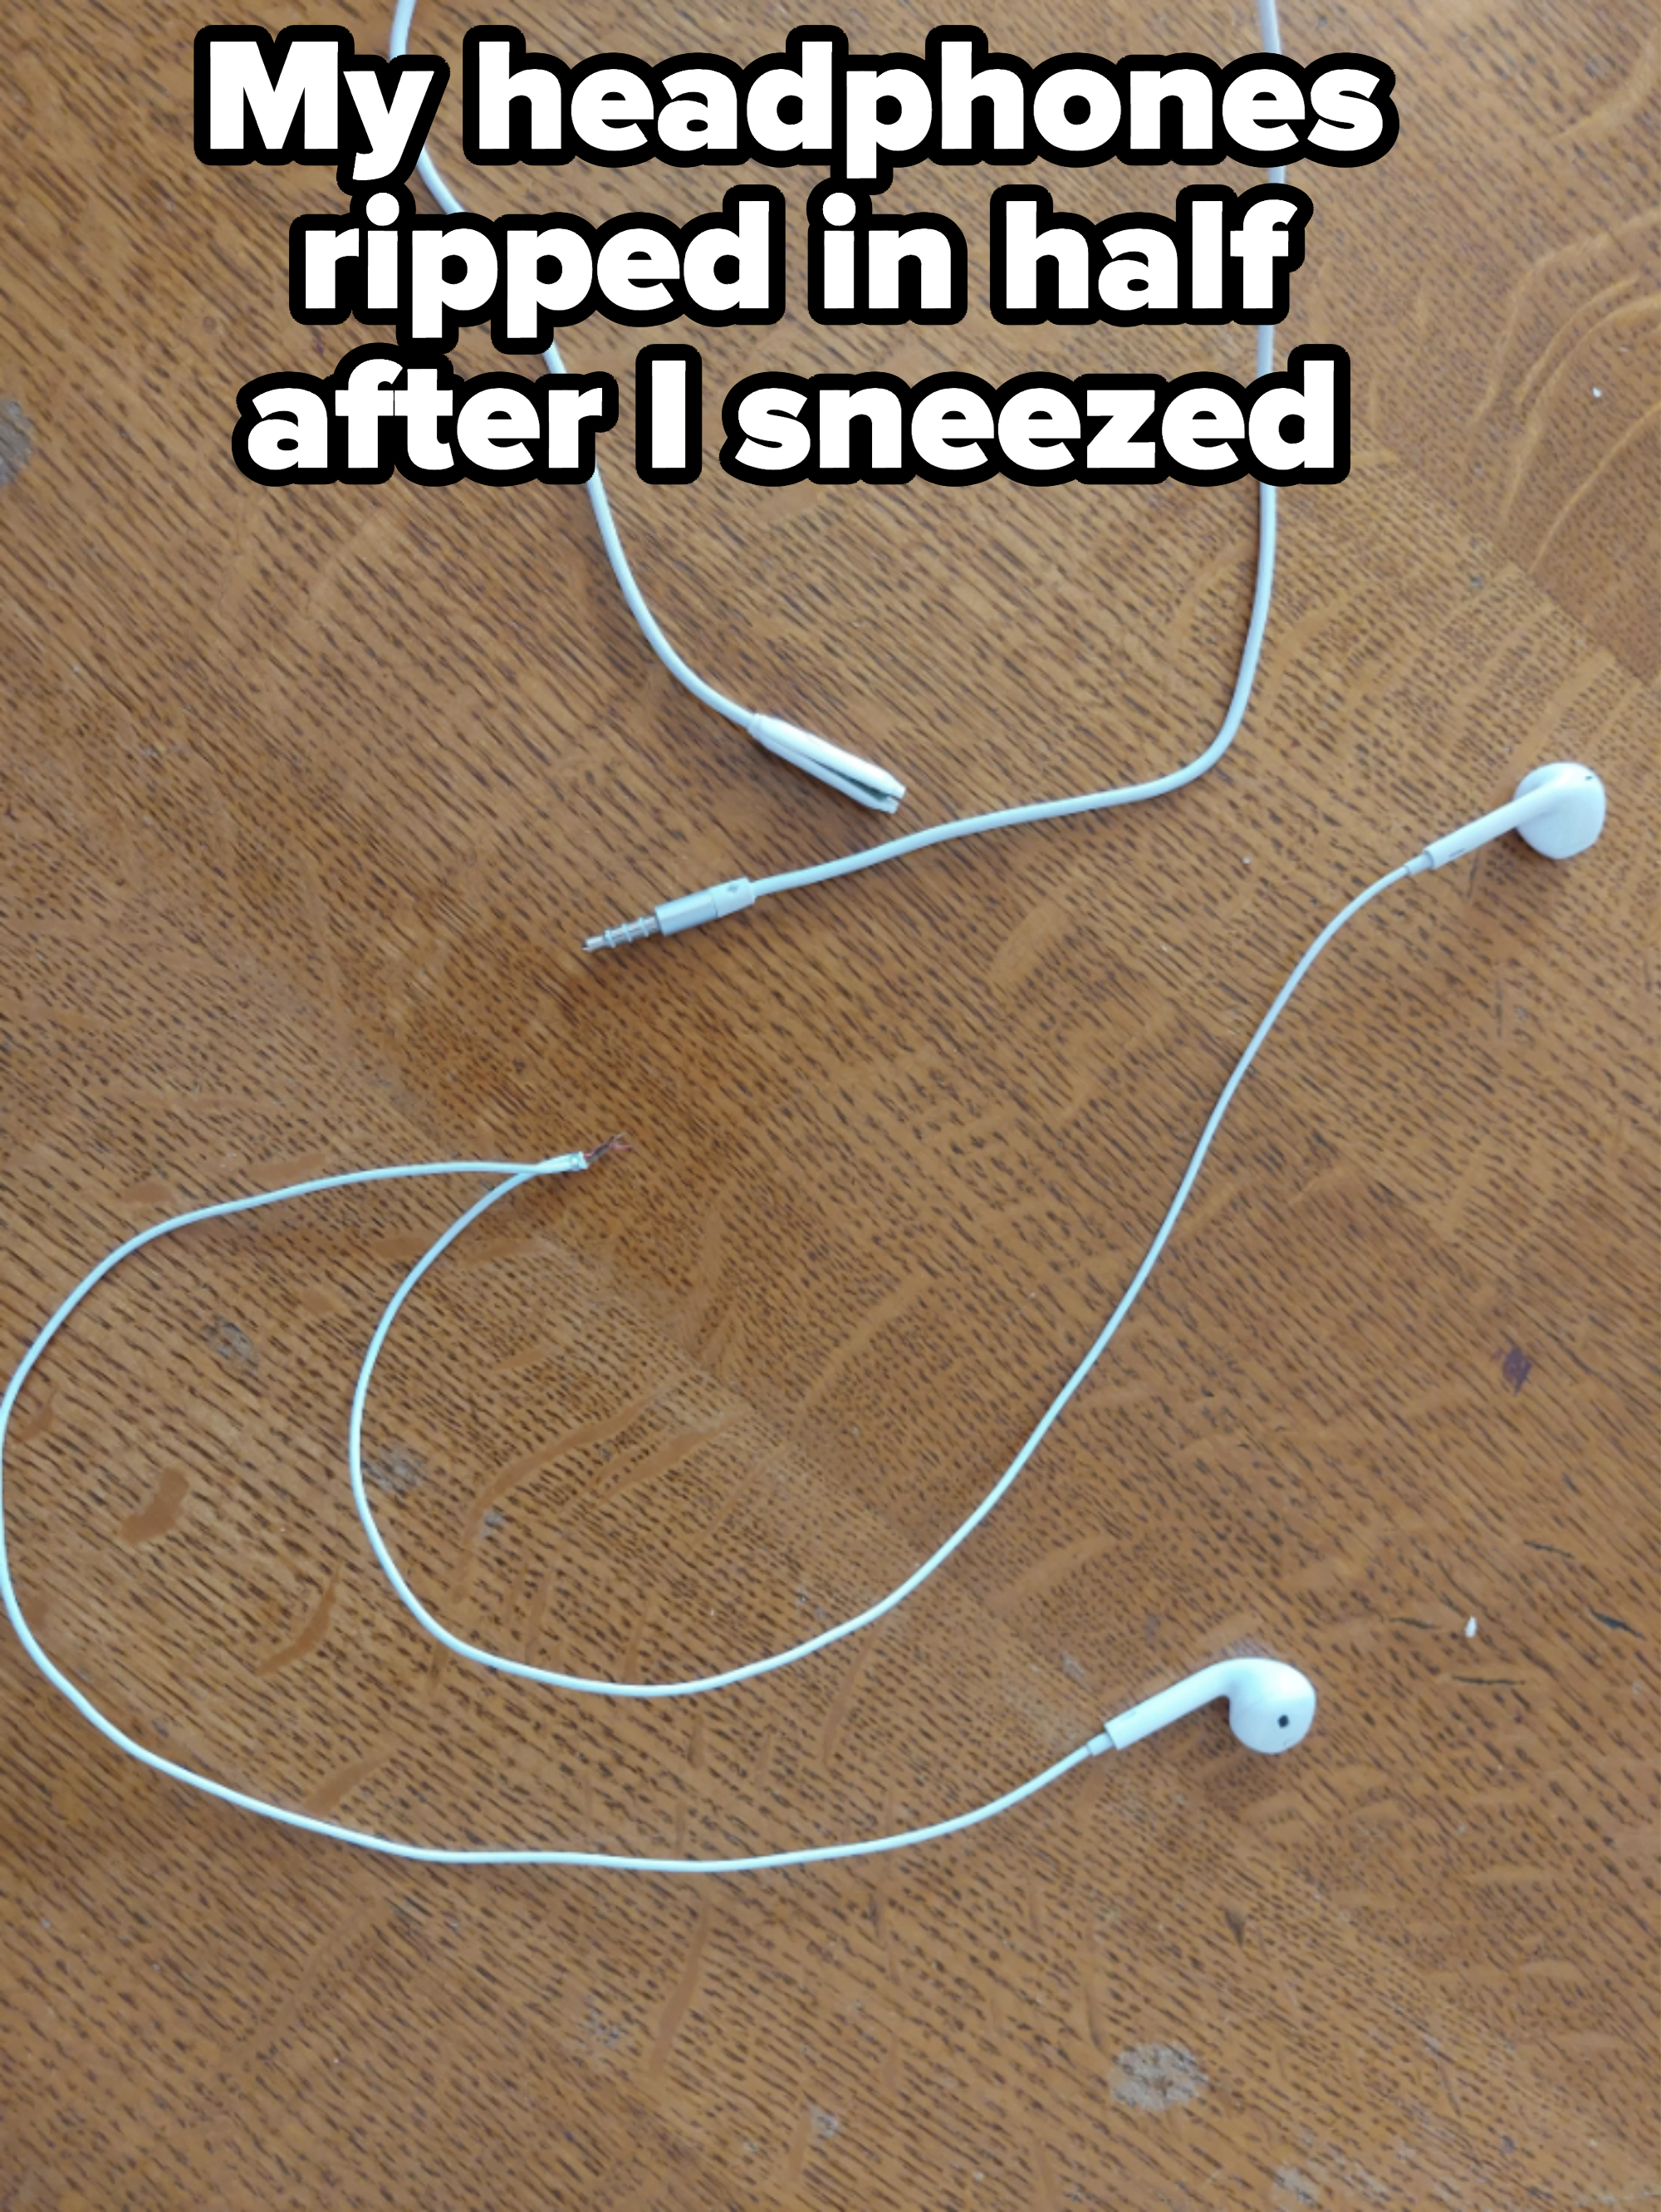 Broken headphones